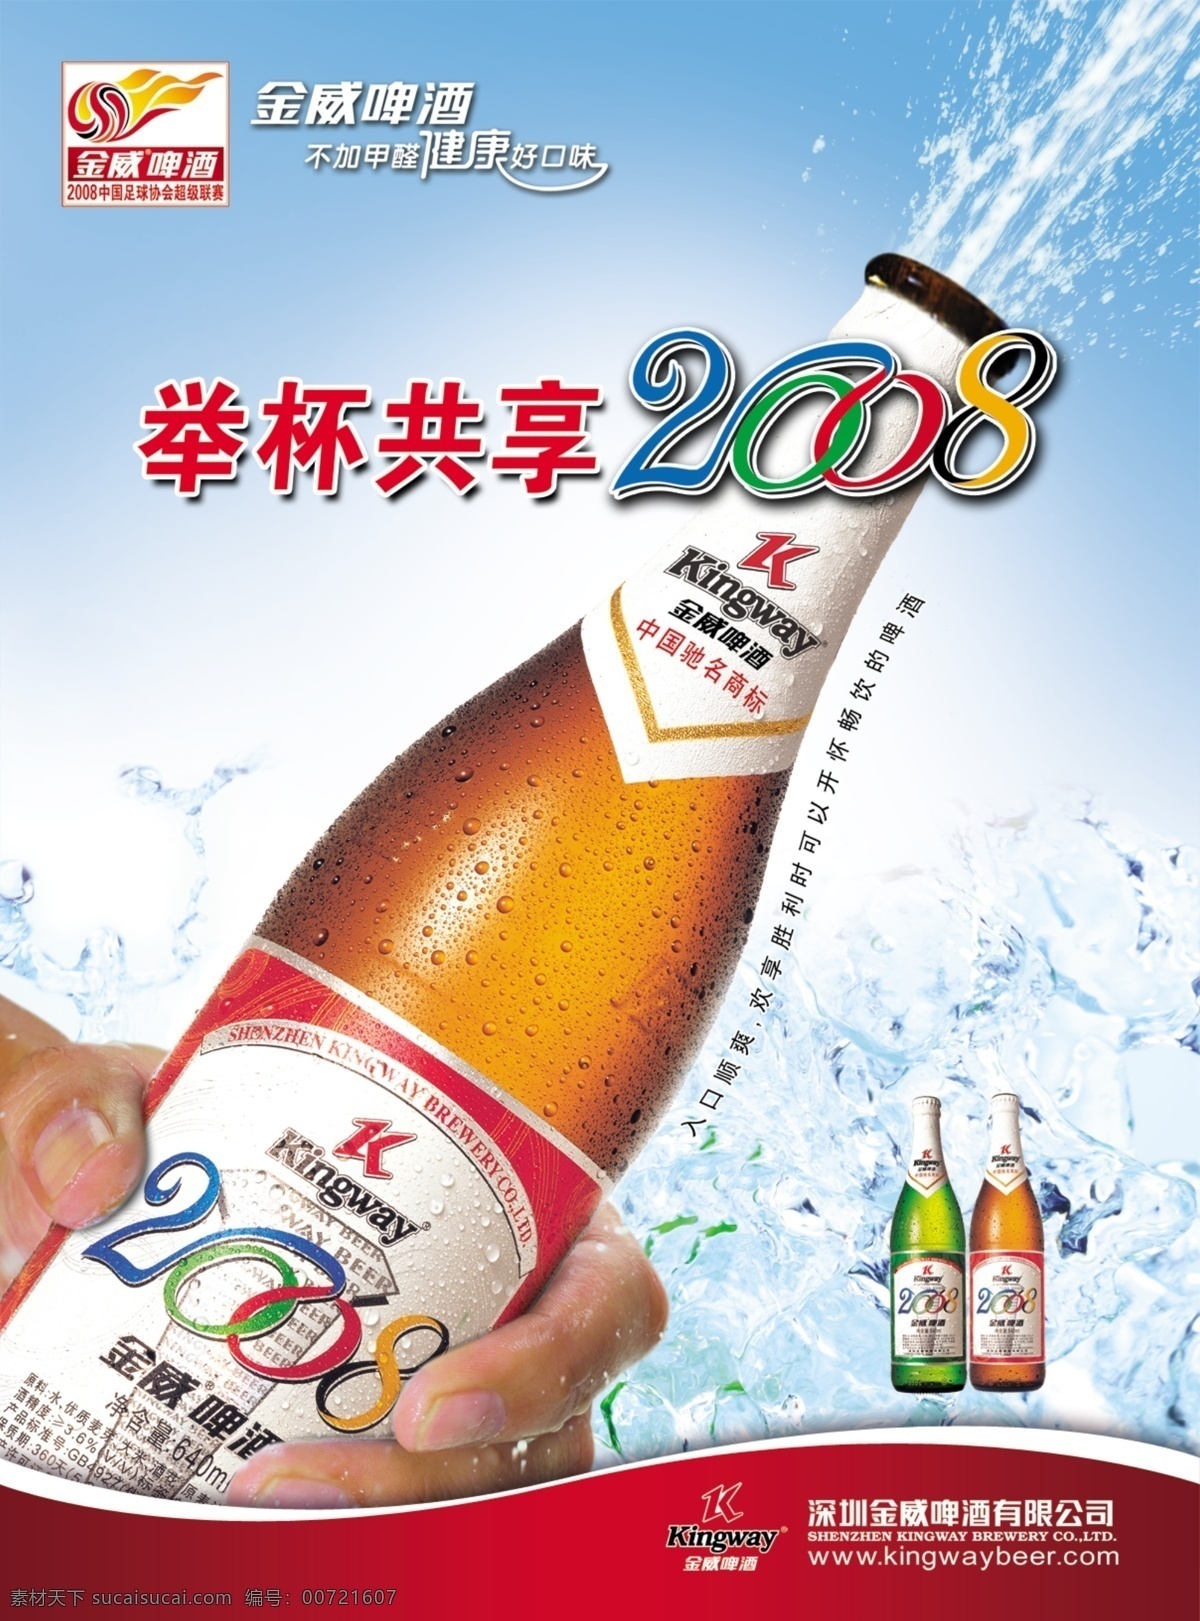 奥运 金威啤酒 海报 酒广告海报 简约风格 创意海报 酒 白色